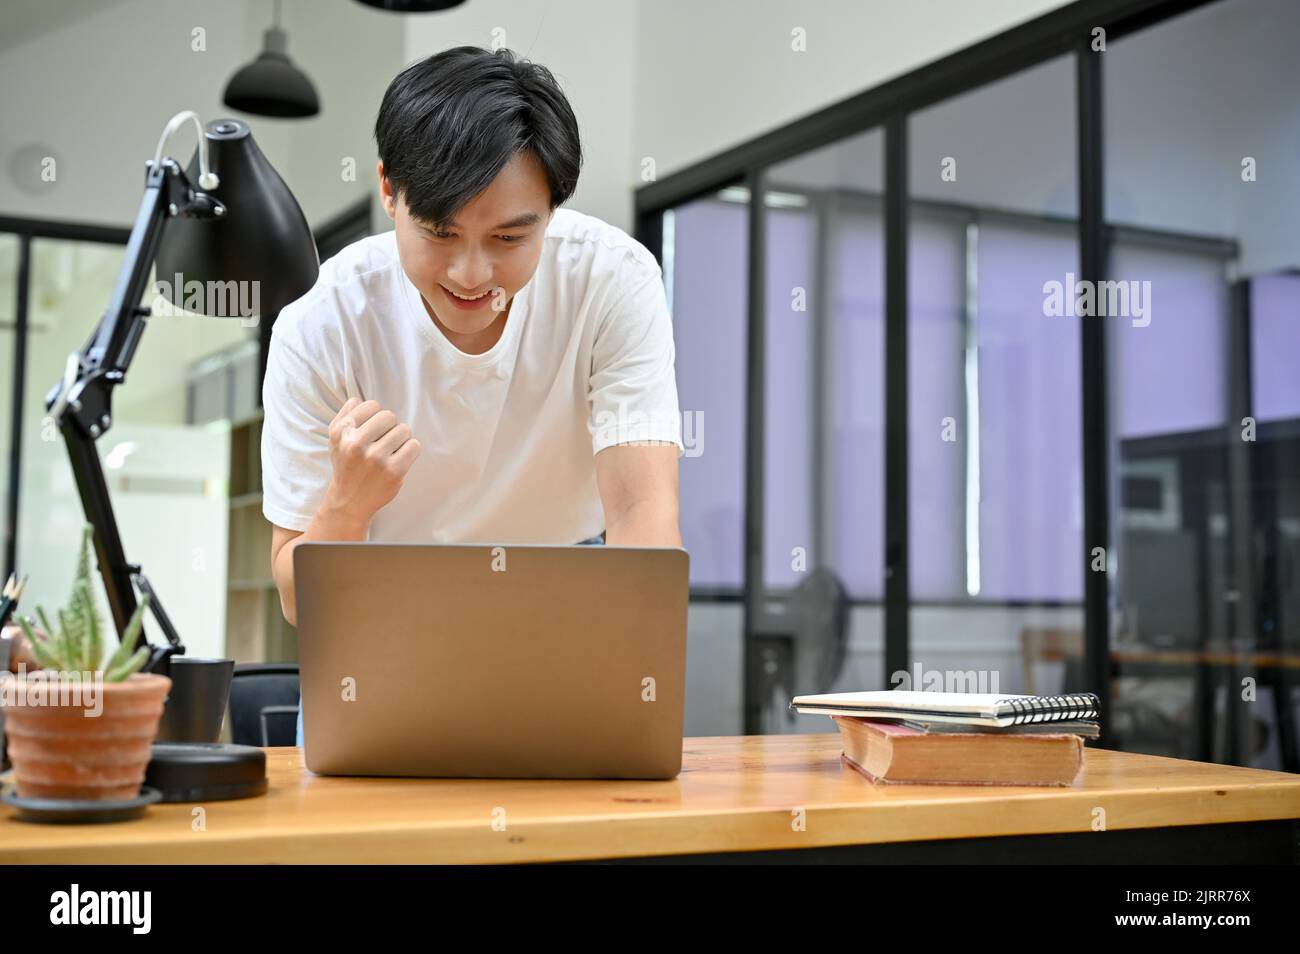 Hermoso joven asiático mirando la pantalla de la computadora portátil, sintiéndose feliz después de obtener un maravilloso correo electrónico, promoción de trabajo, pasando el examen, ganando la lotería Foto de stock